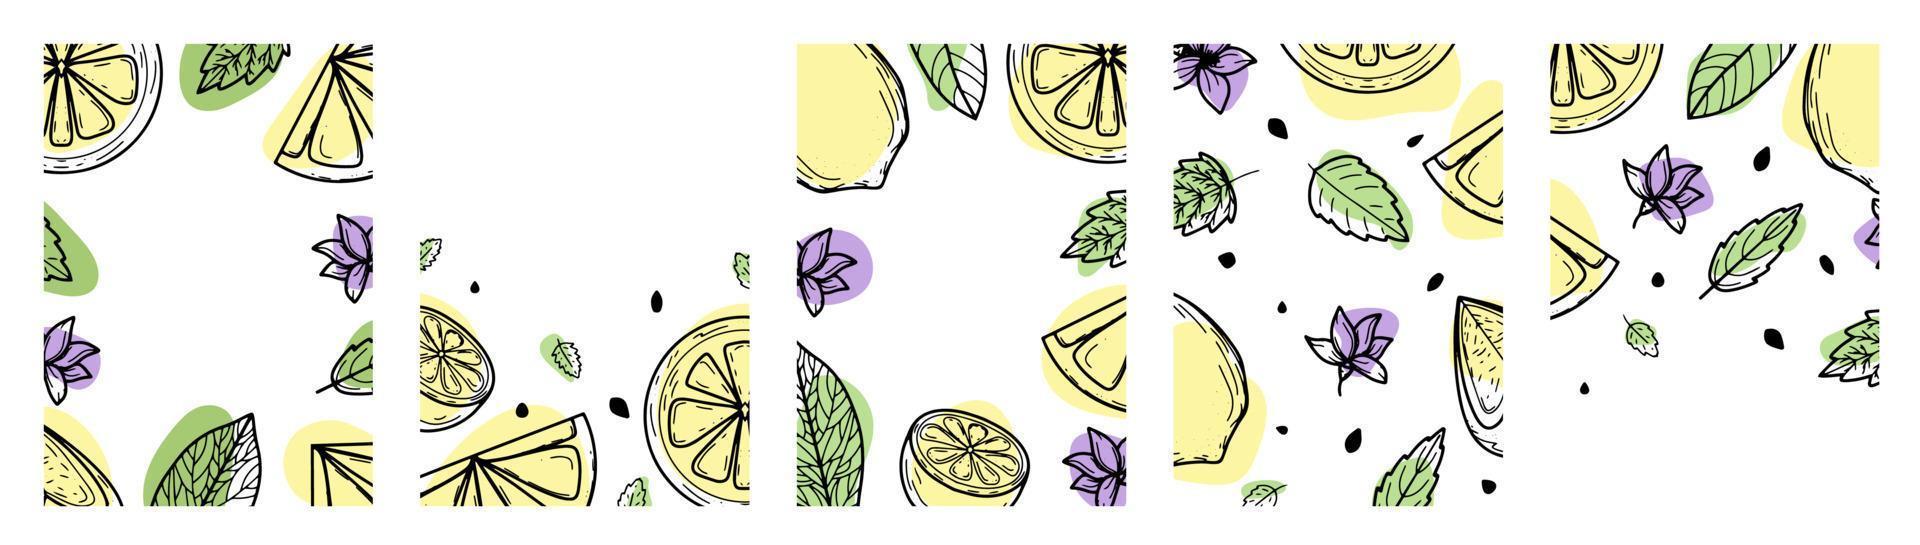 stellen sie hintergrund mit zitrone, blume, blättern ein. handgezeichnete Vektorillustration von Früchten. im Stil einer Gravur mit Farbflecken. Zitrus, botanisches Design. für Poster, Drucke, Tapeten, Cover vektor